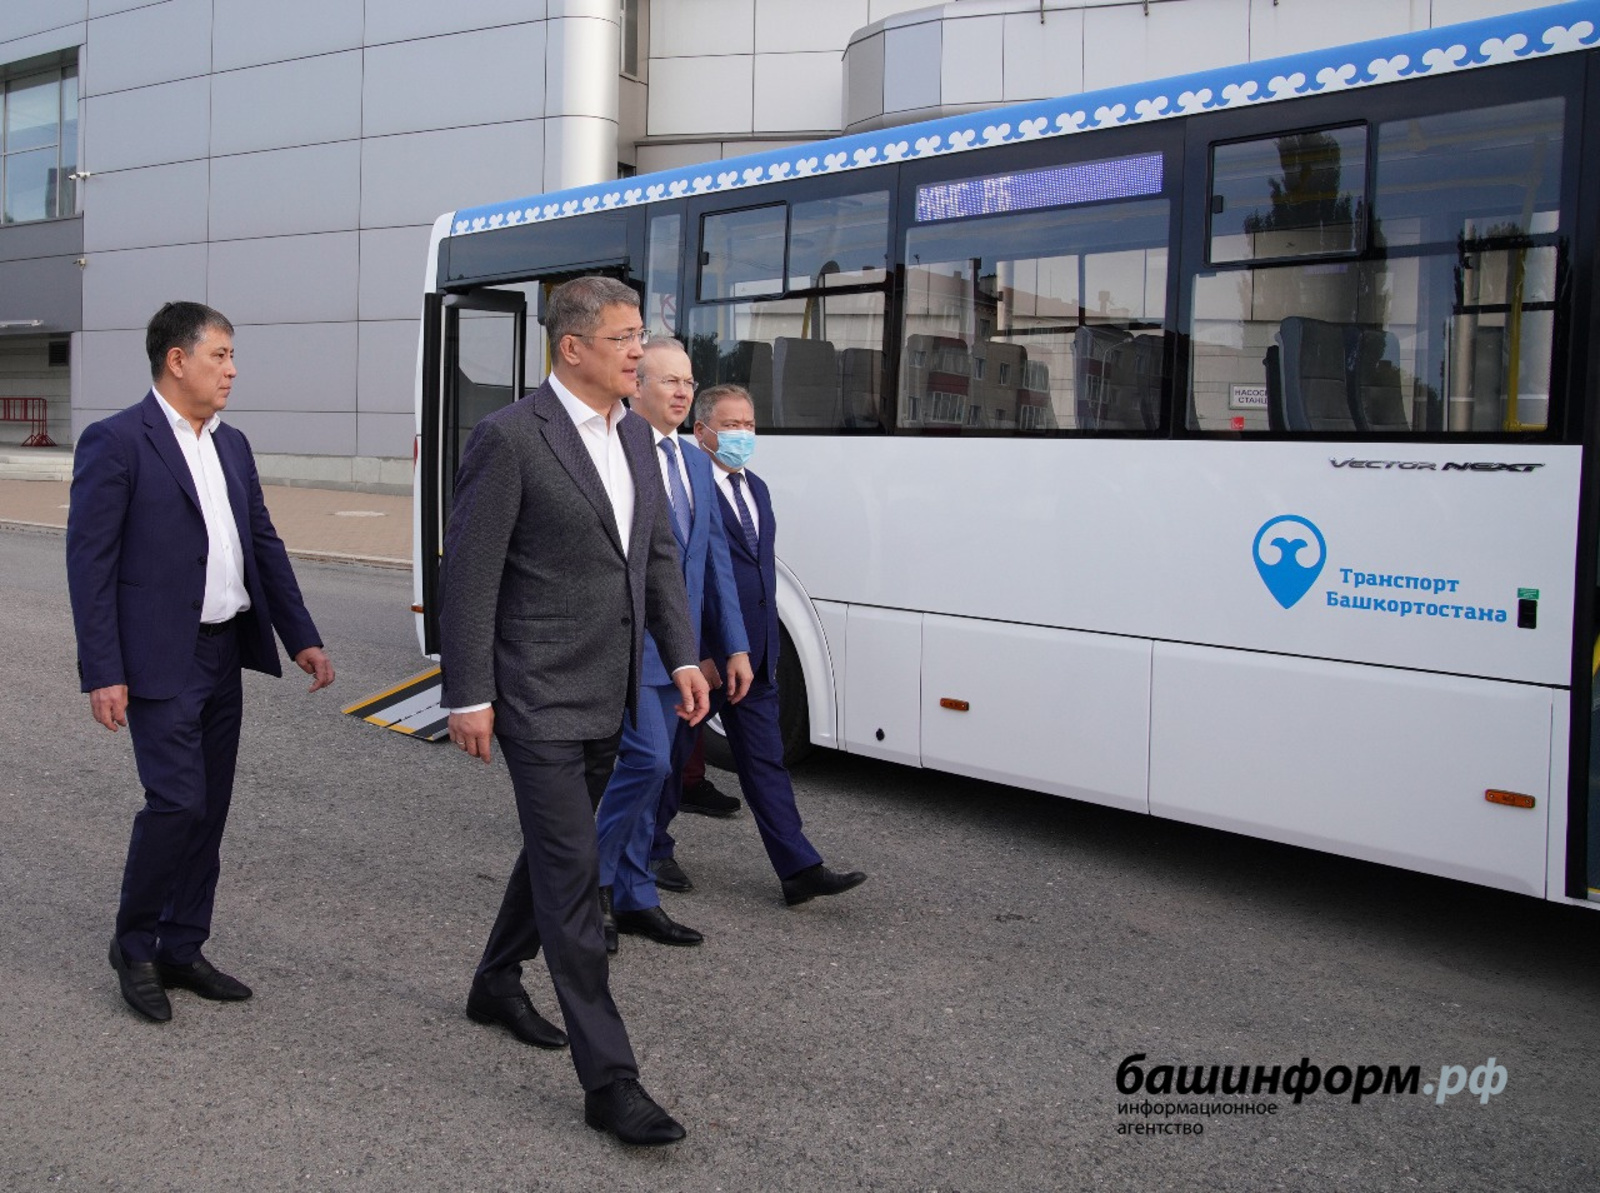 Глава Башкирии считает, что реформа пассажирского транспорта даёт положительные результаты